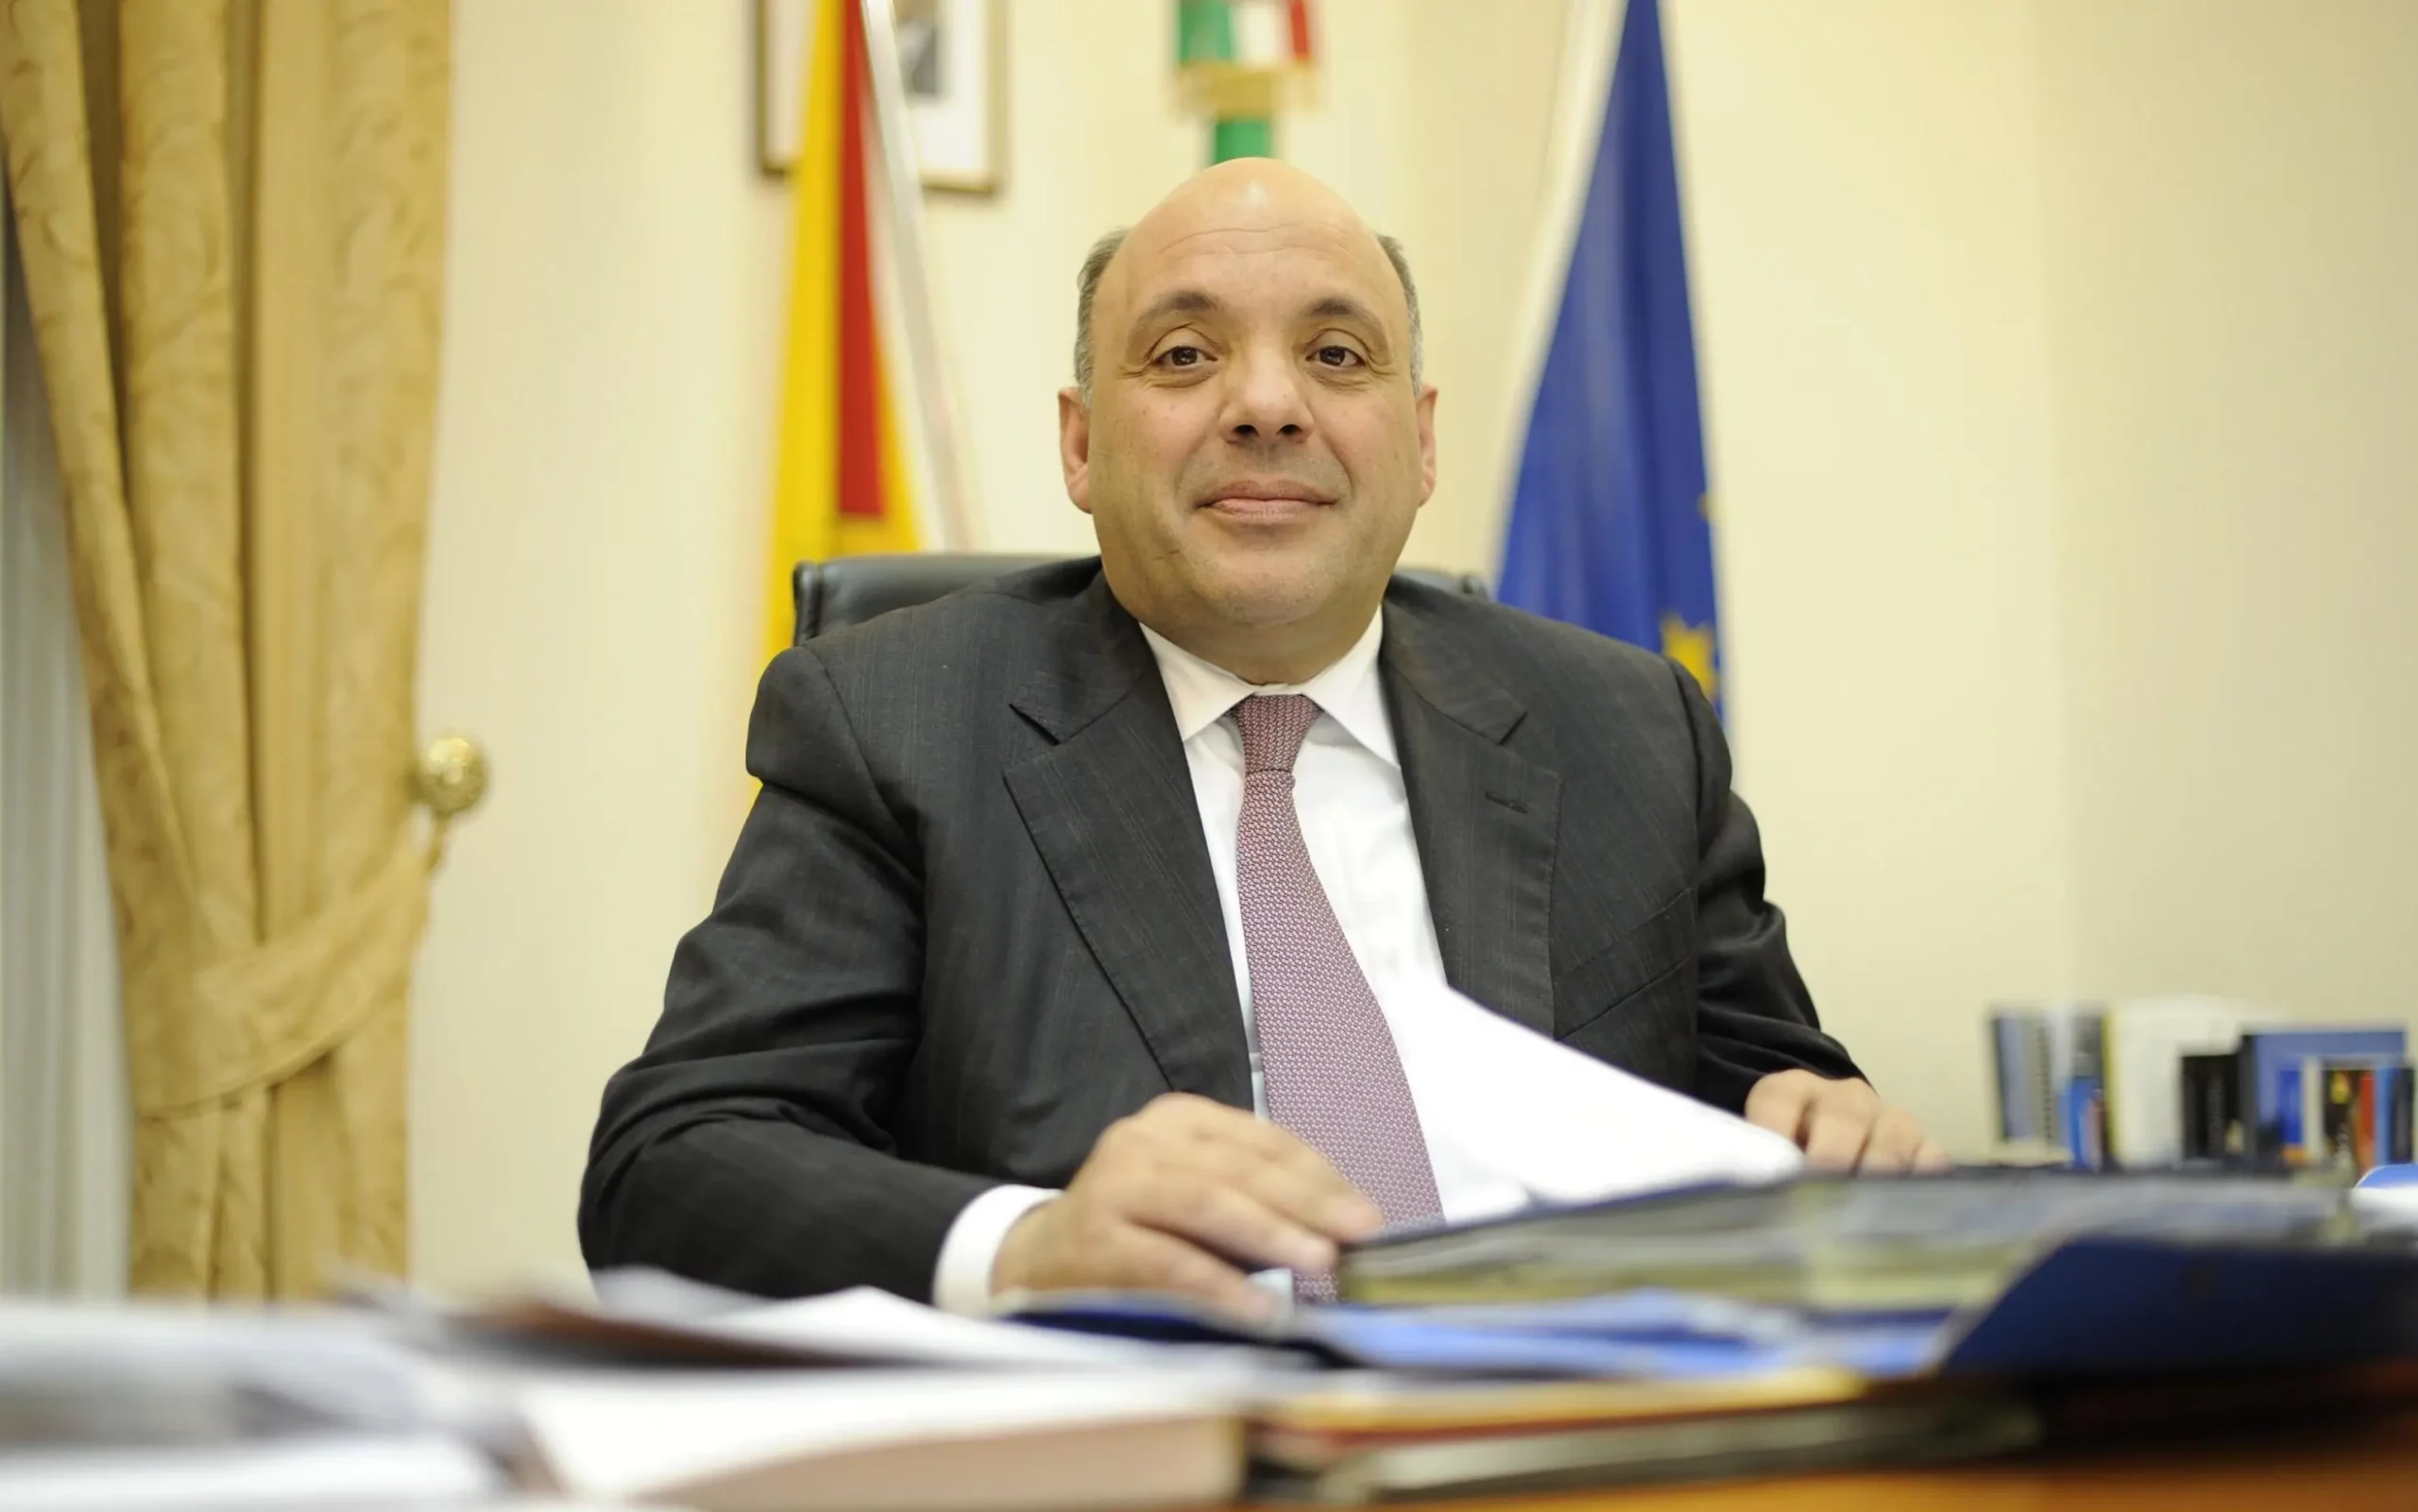 Voto di scambio, arrestato l'ex assessore regionale Giuseppe Sorbello: con lui altre 11 persone